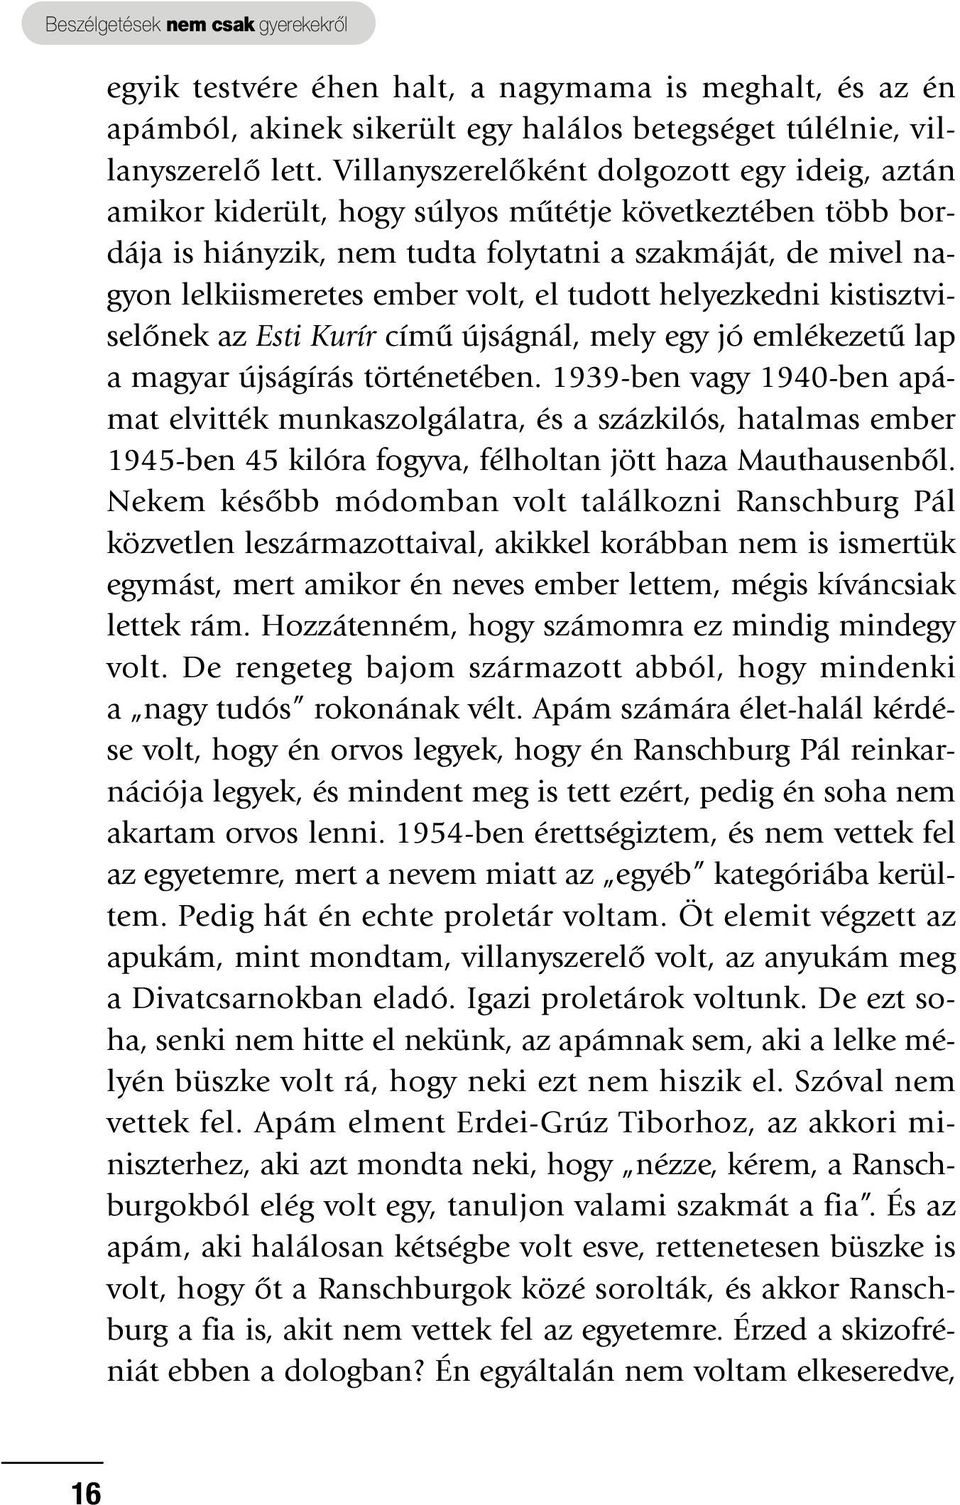 el tudott helyezkedni kistisztviselônek az Esti Kurír címû újságnál, mely egy jó emlékezetû lap a magyar újságírás történetében.